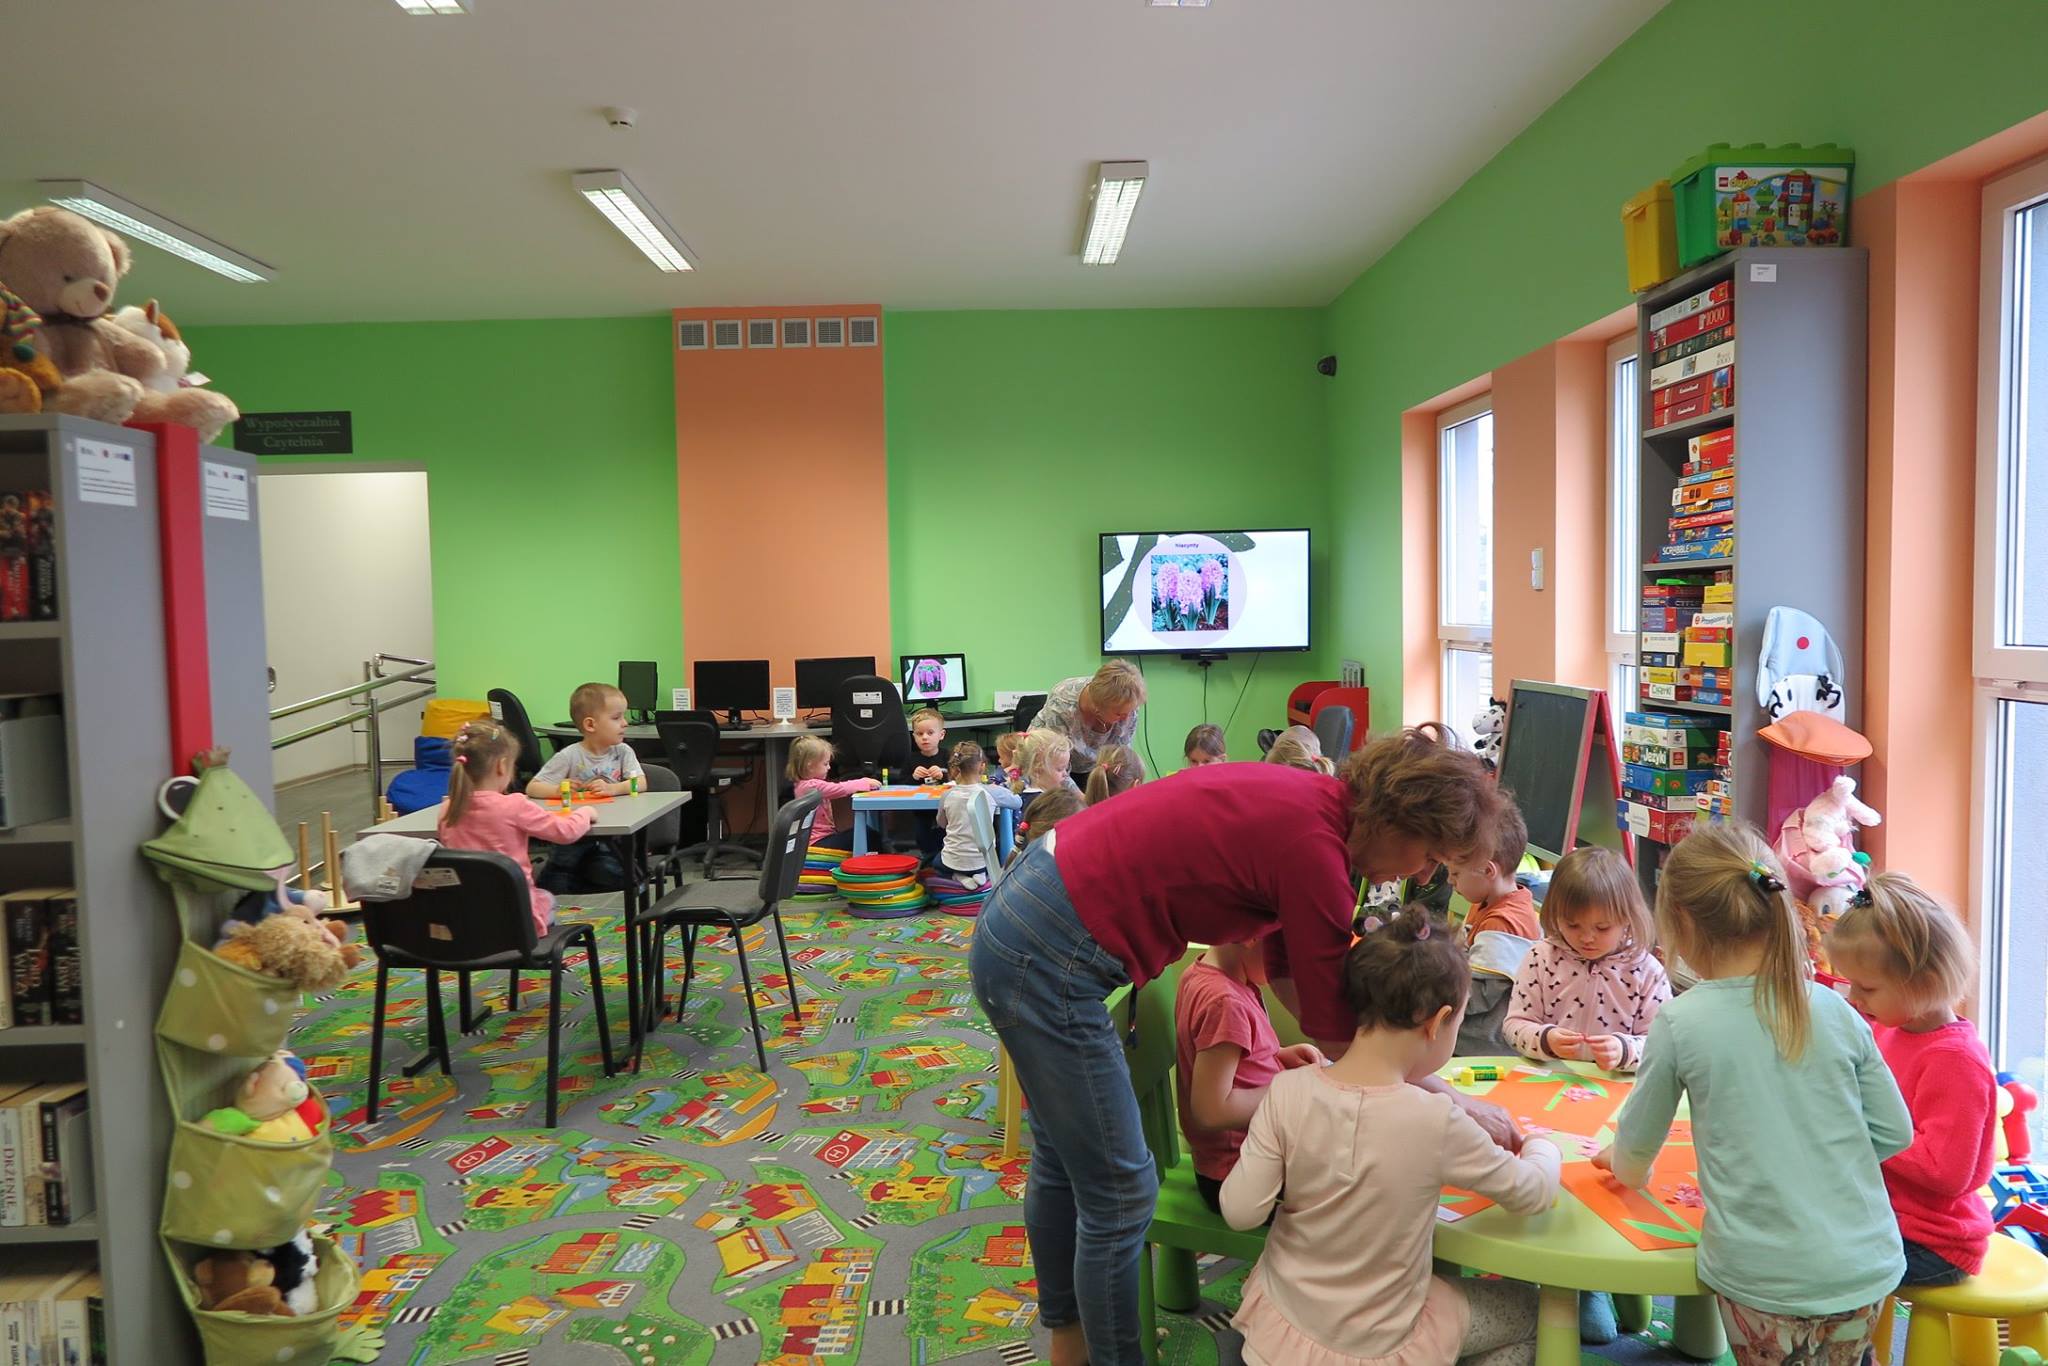 Wnętrze biblioteki. Przy stolikach siedzą dzieci i wykonują piękne kolorowe hiacynty z przygotowanych elementów, które potem zabiorą ze sobą do przedszkola.